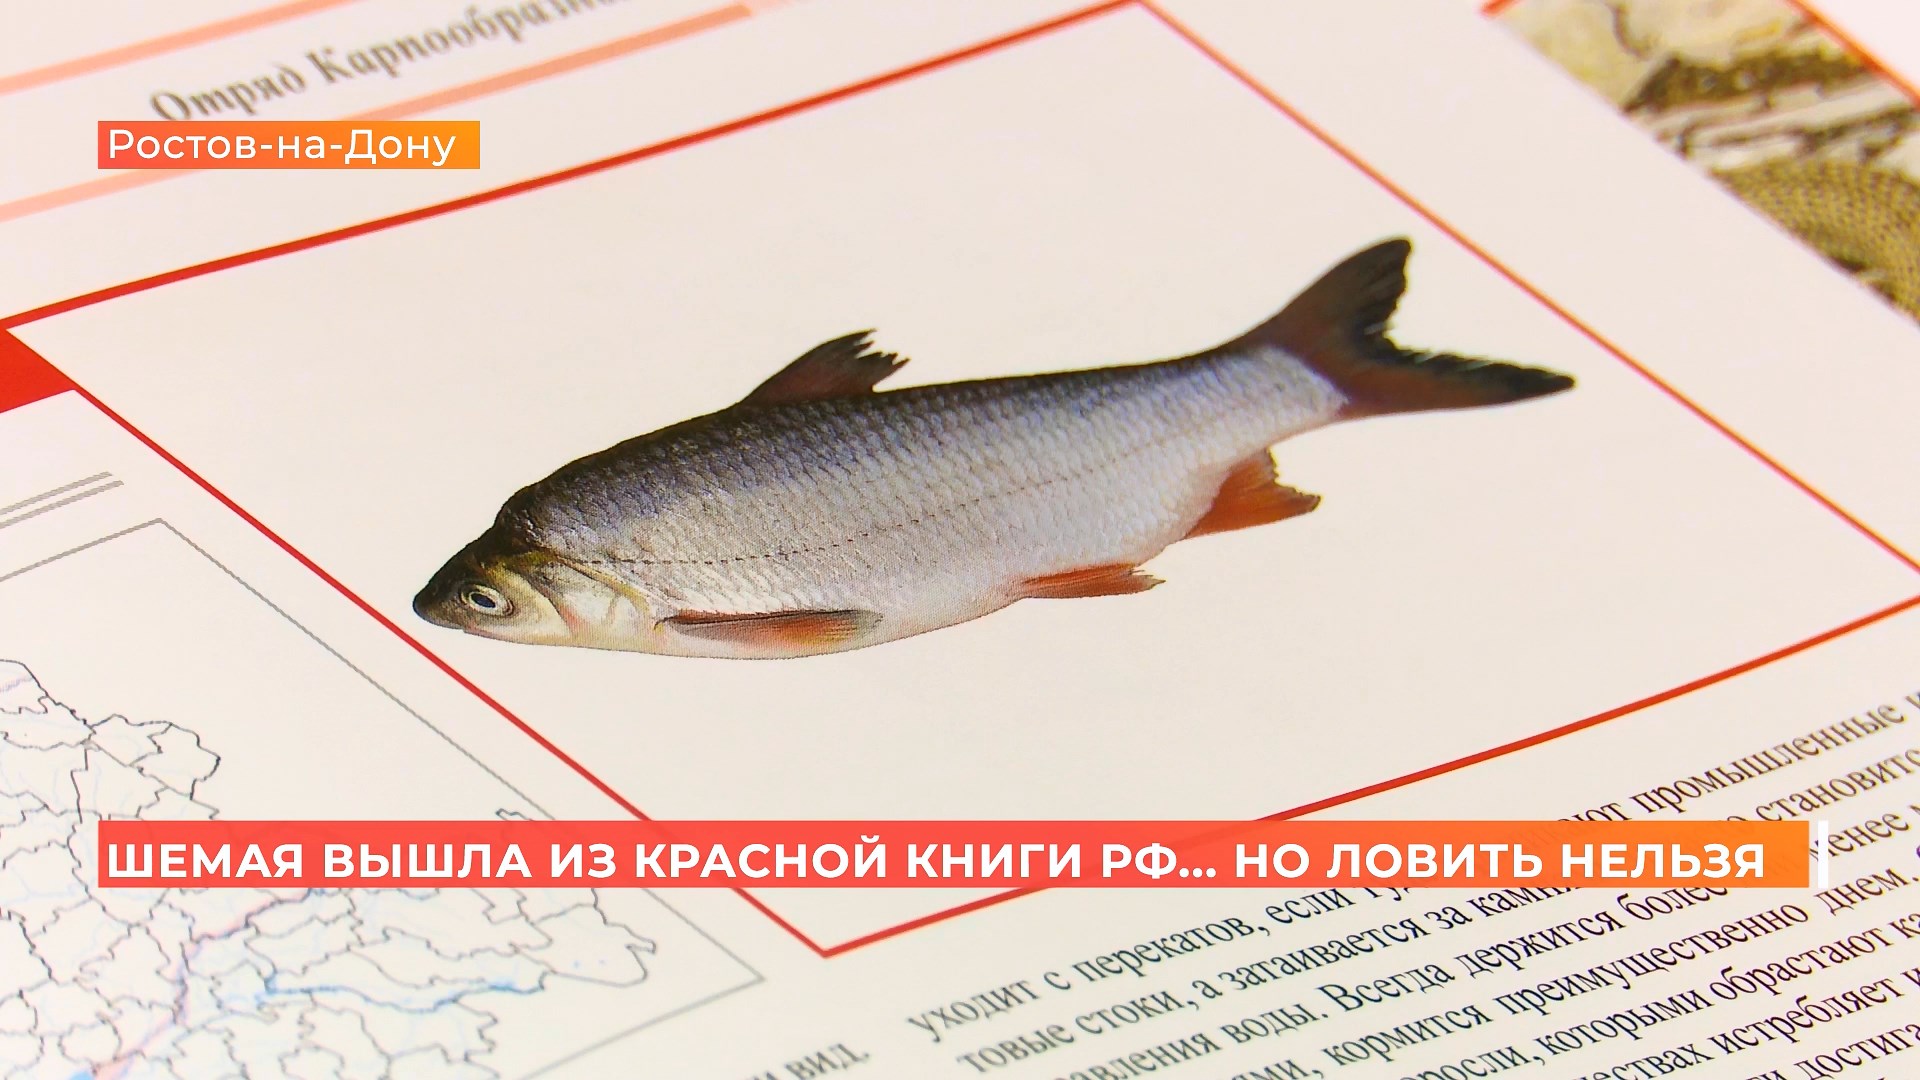 Из Красной книги убрали, но ловить всё еще нельзя: почему рыбакам запрещают добывать шемаю